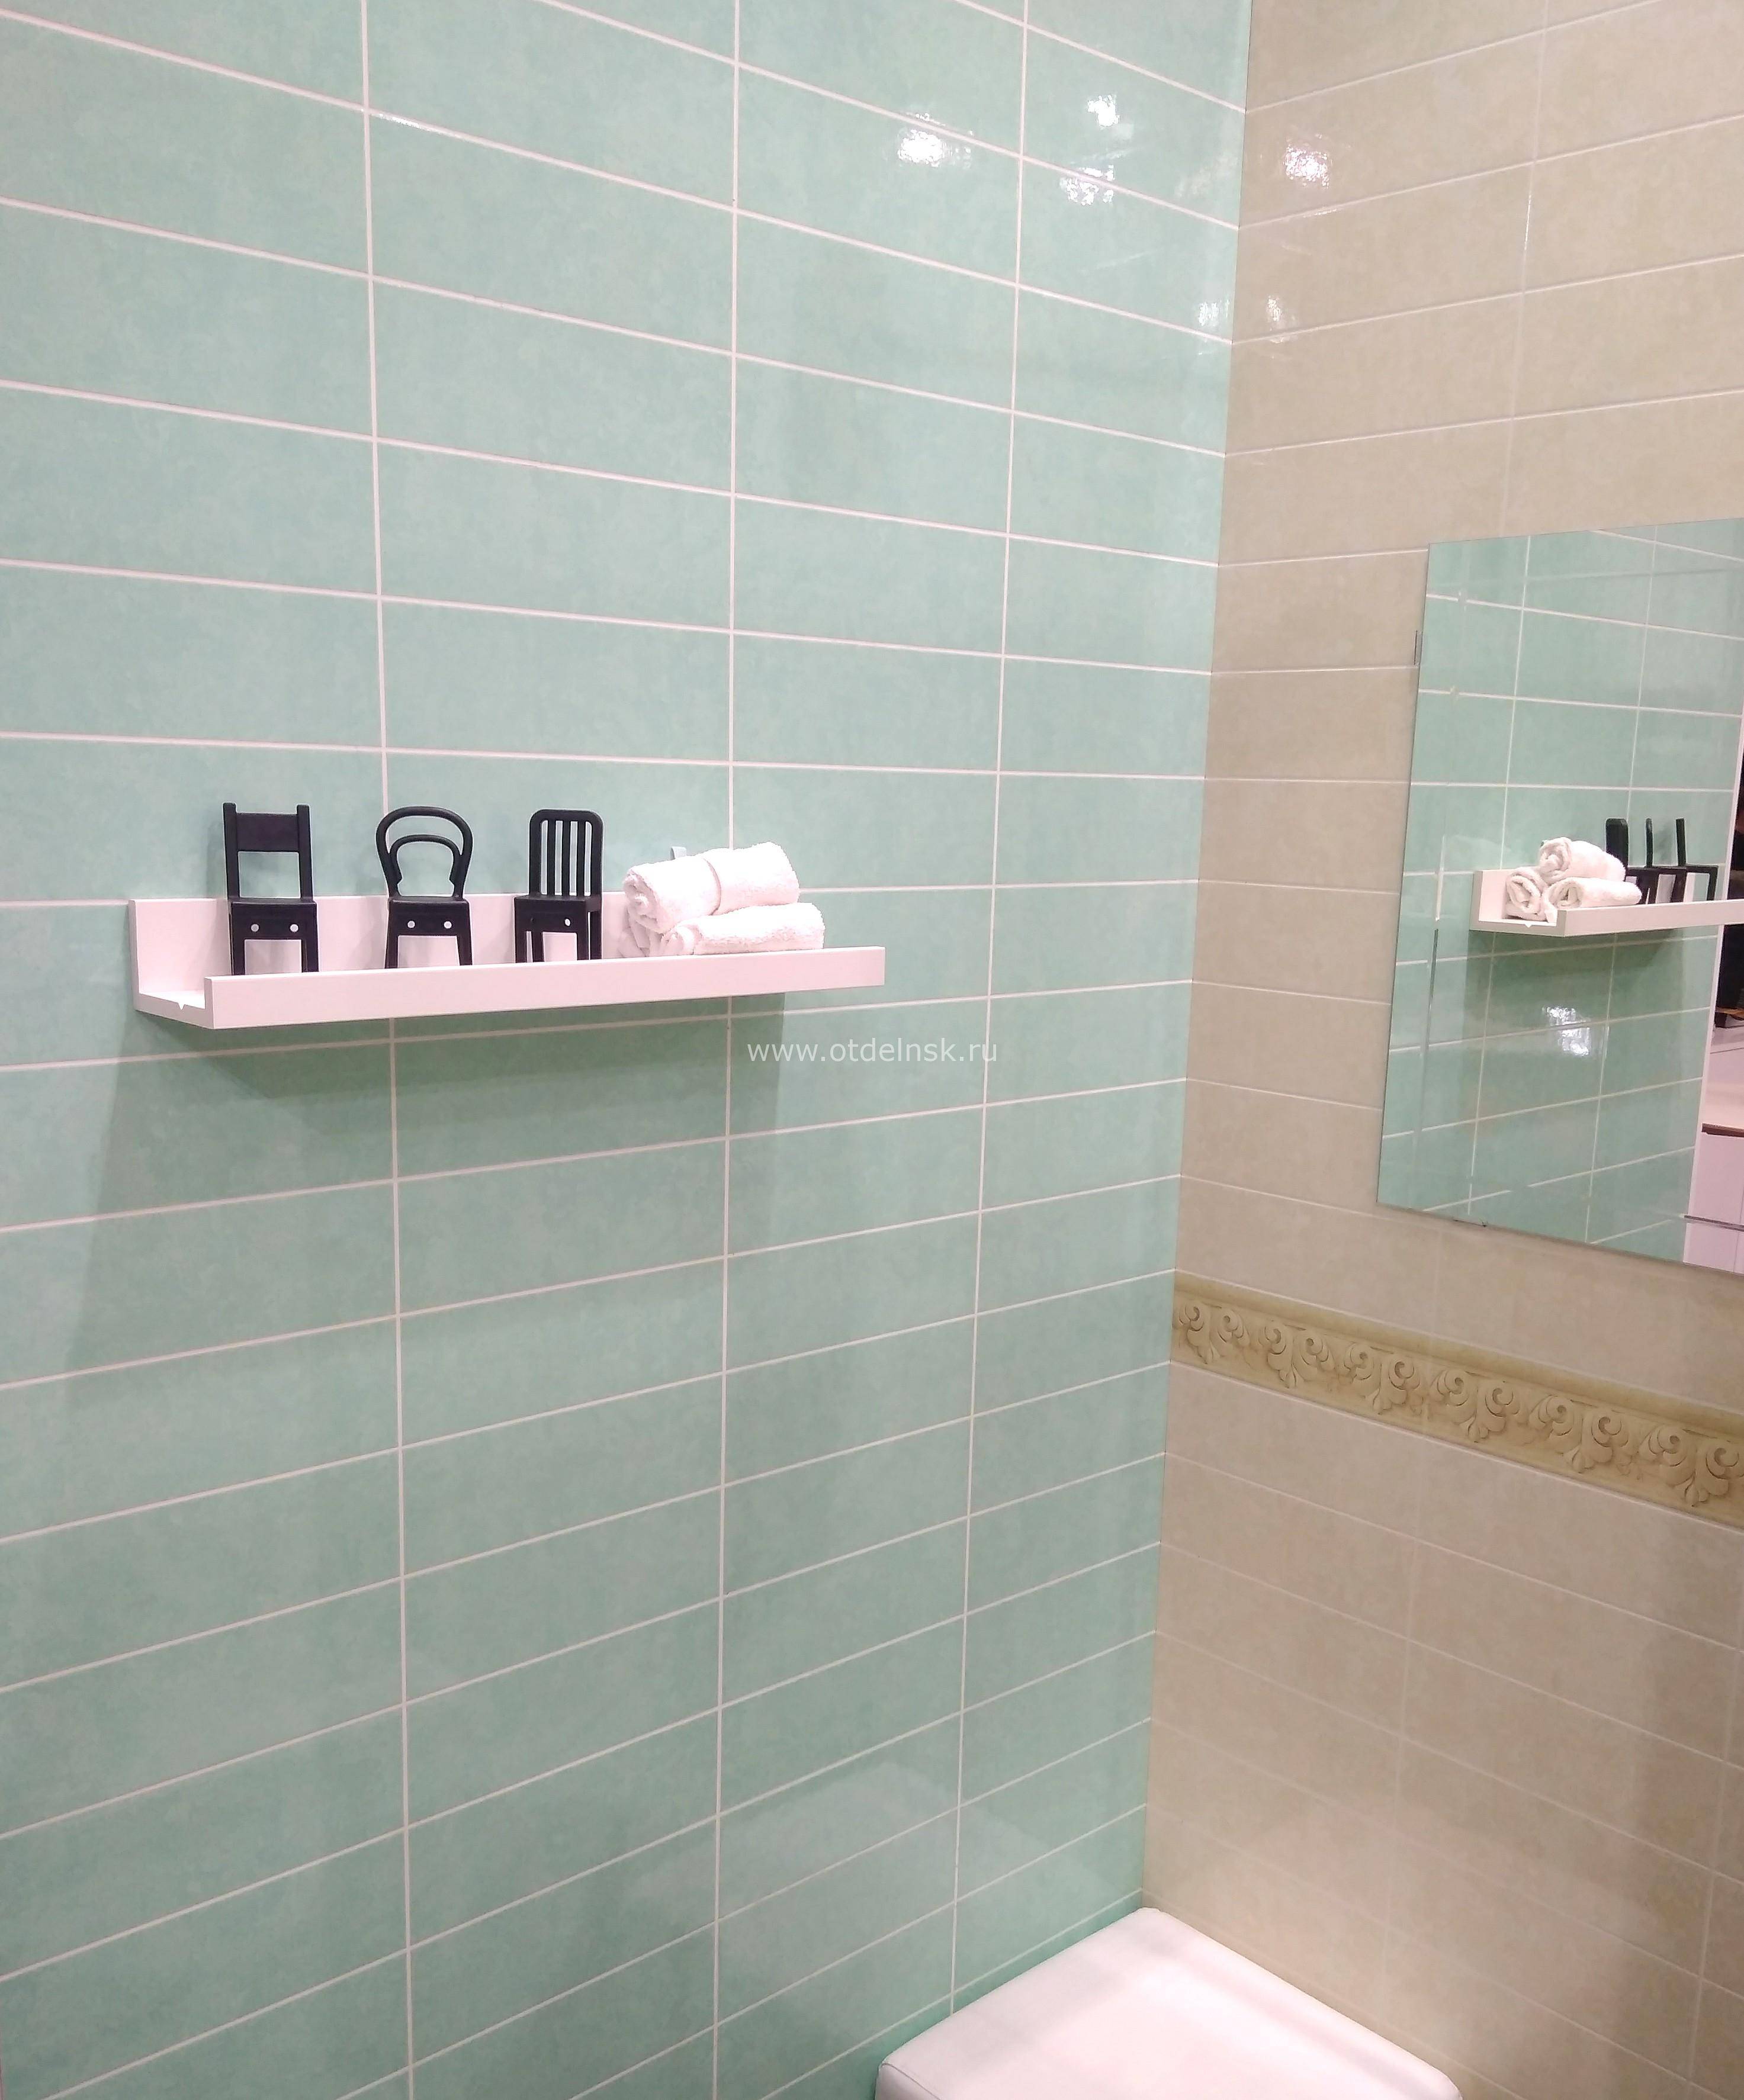 Панели пвх для ванной — доступная альтернатива плитке